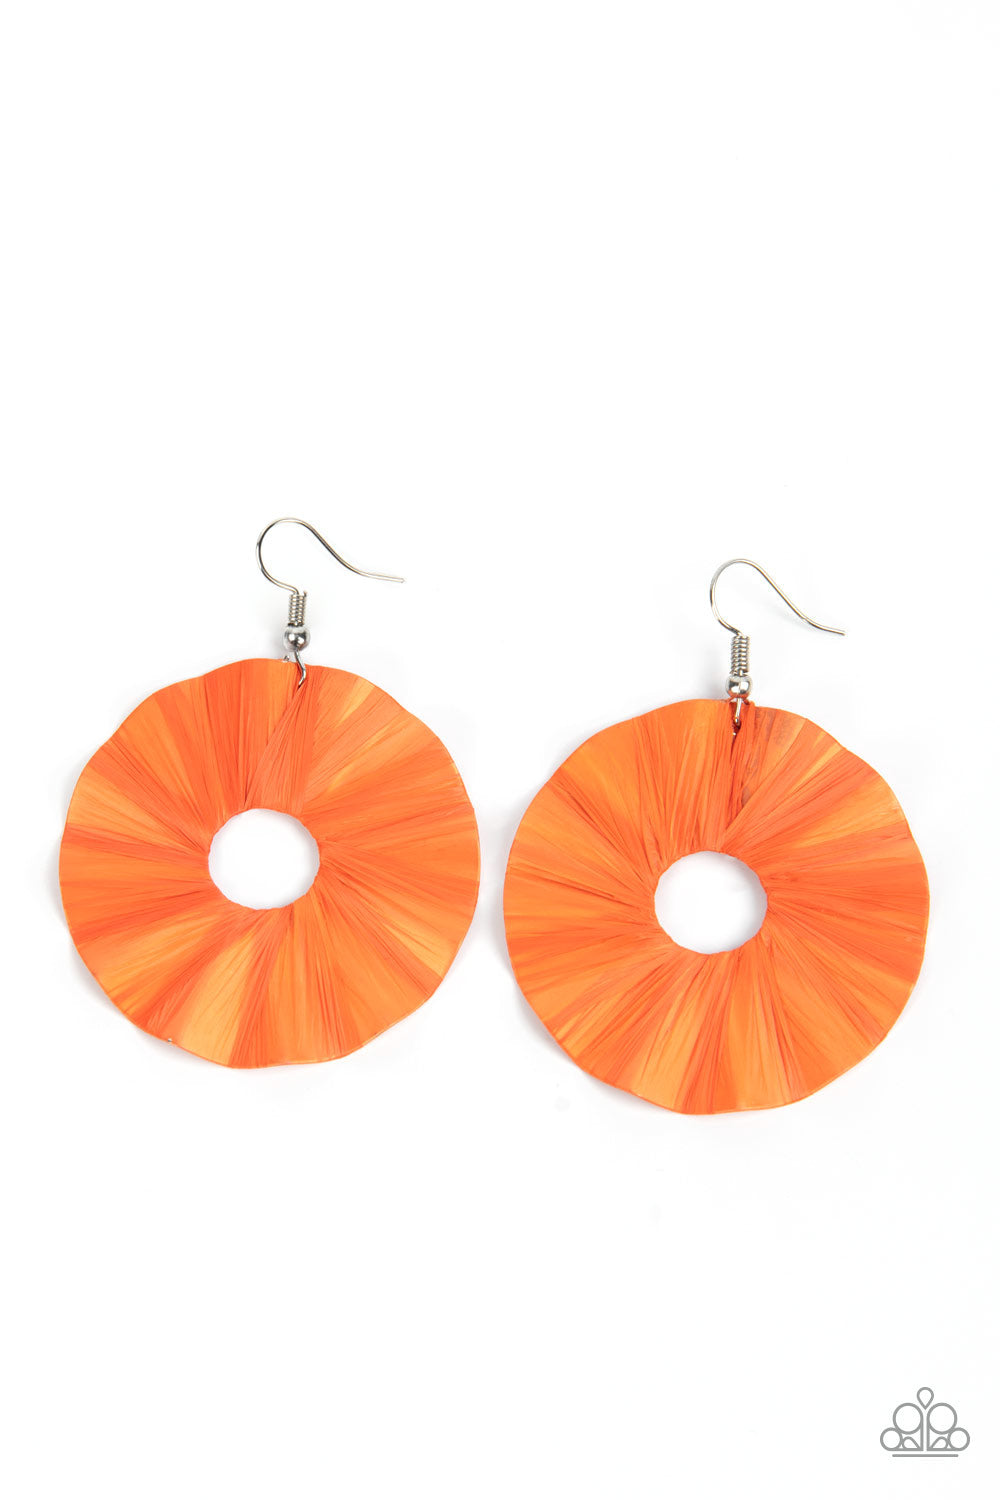 Earrings - Fan the Breeze - Orange